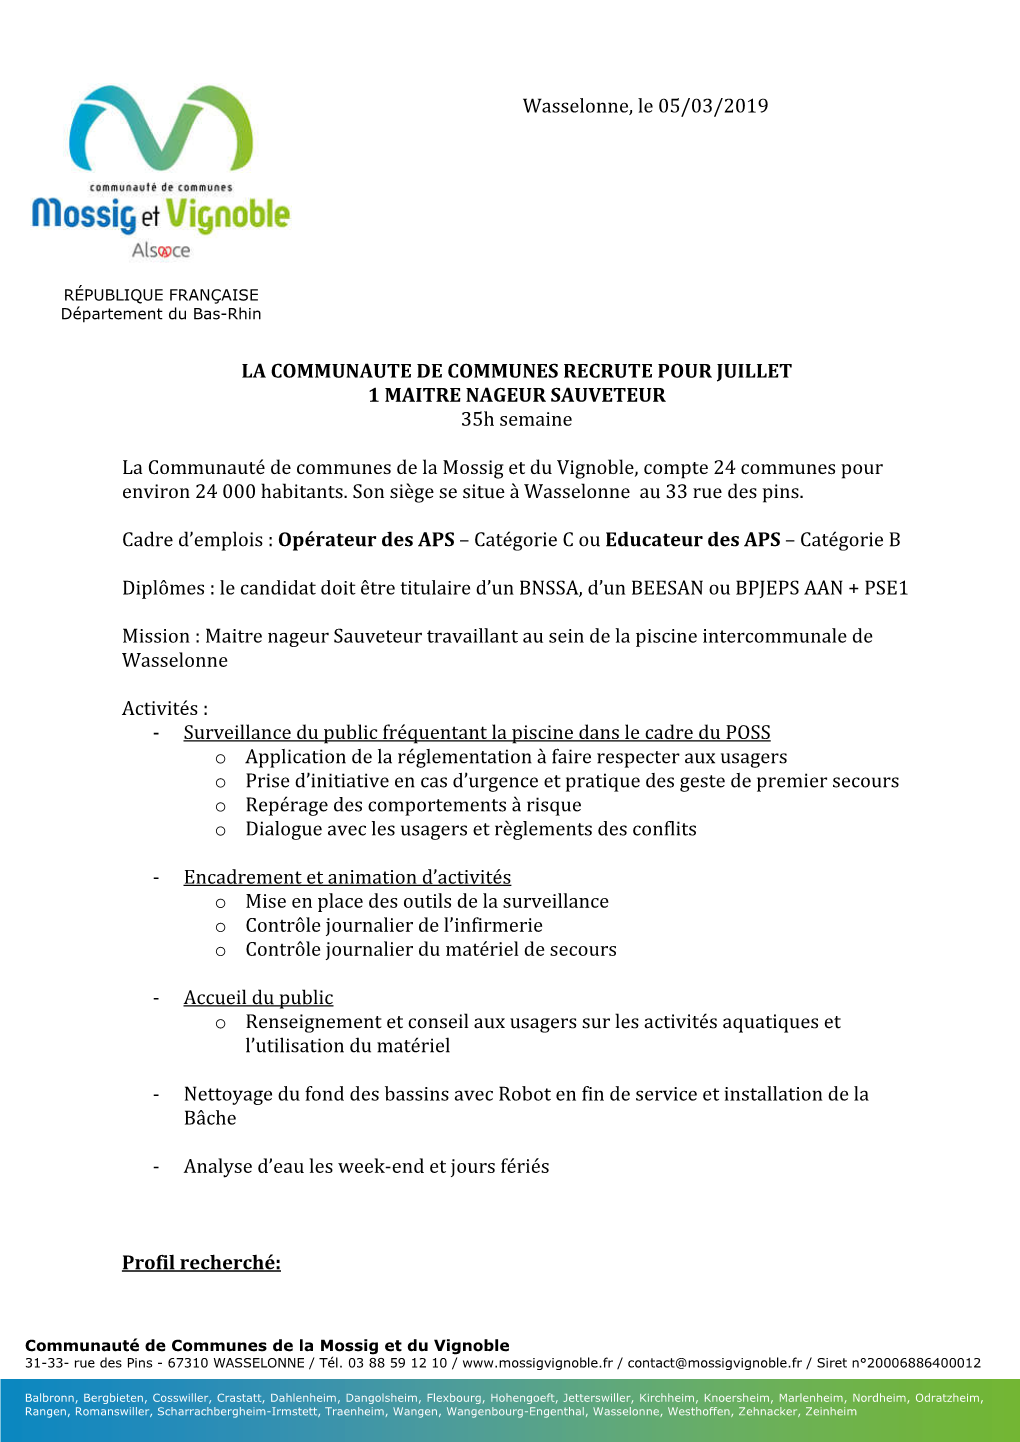 Wasselonne, Le 05/03/2019 LA COMMUNAUTE DE COMMUNES RECRUTE POUR JUILLET 1 MAITRE NAGEUR SAUVETEUR 35H Semaine La Communauté D